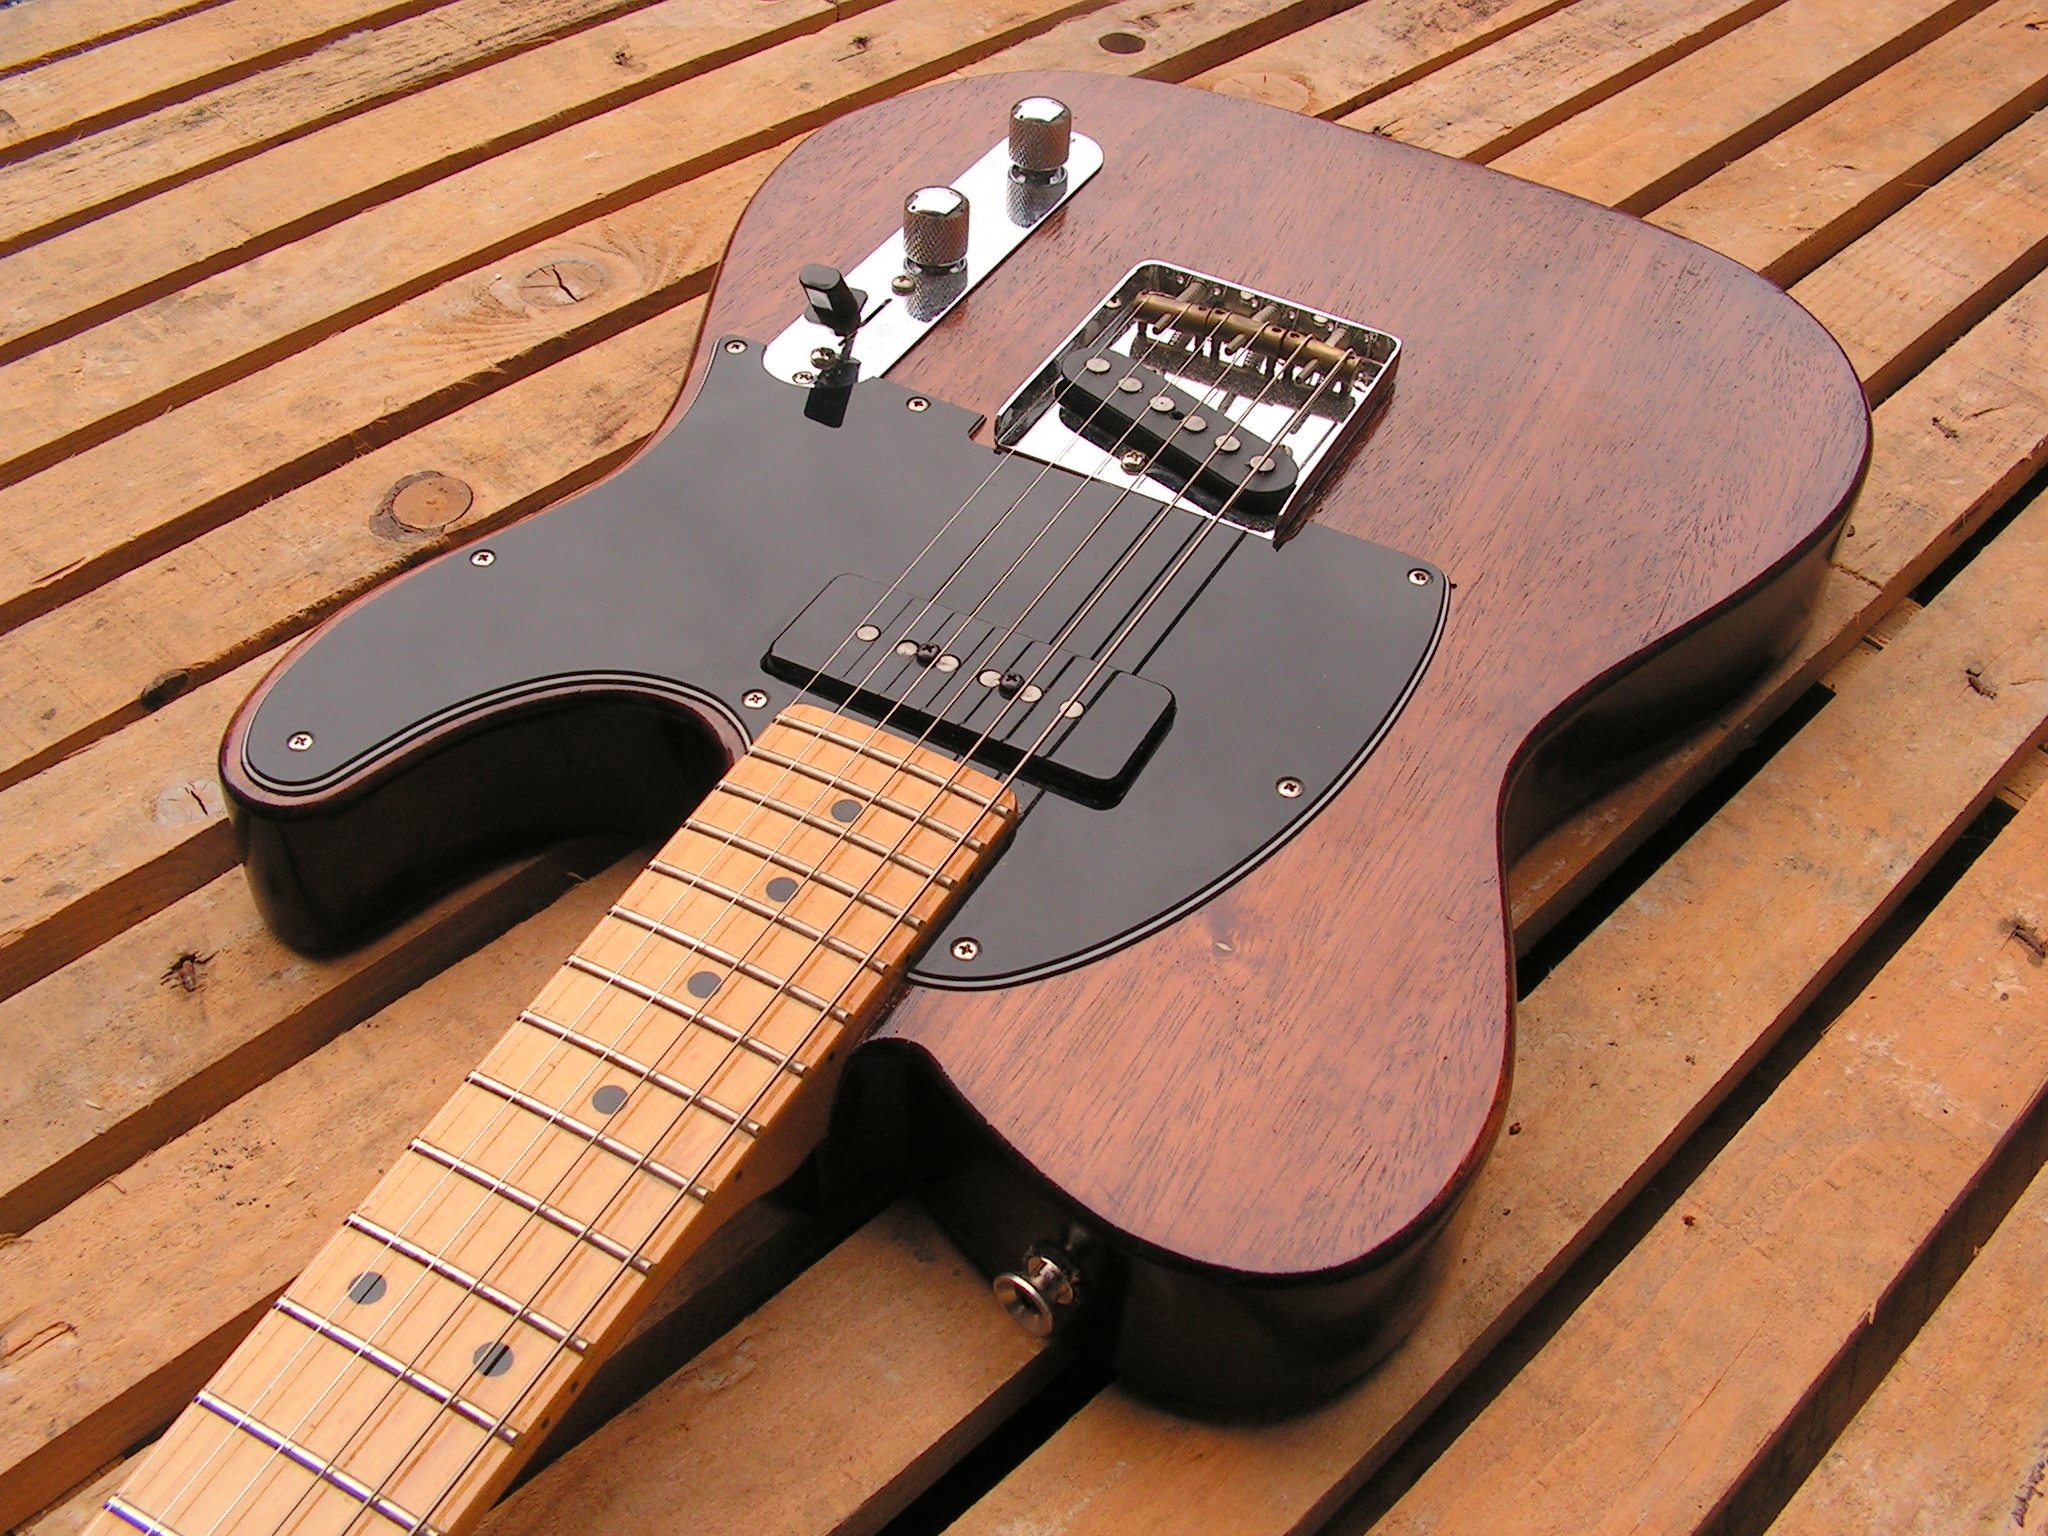 Body di una chitarra elettrica modello Telecaster dal corpo in mogano e manico in acero